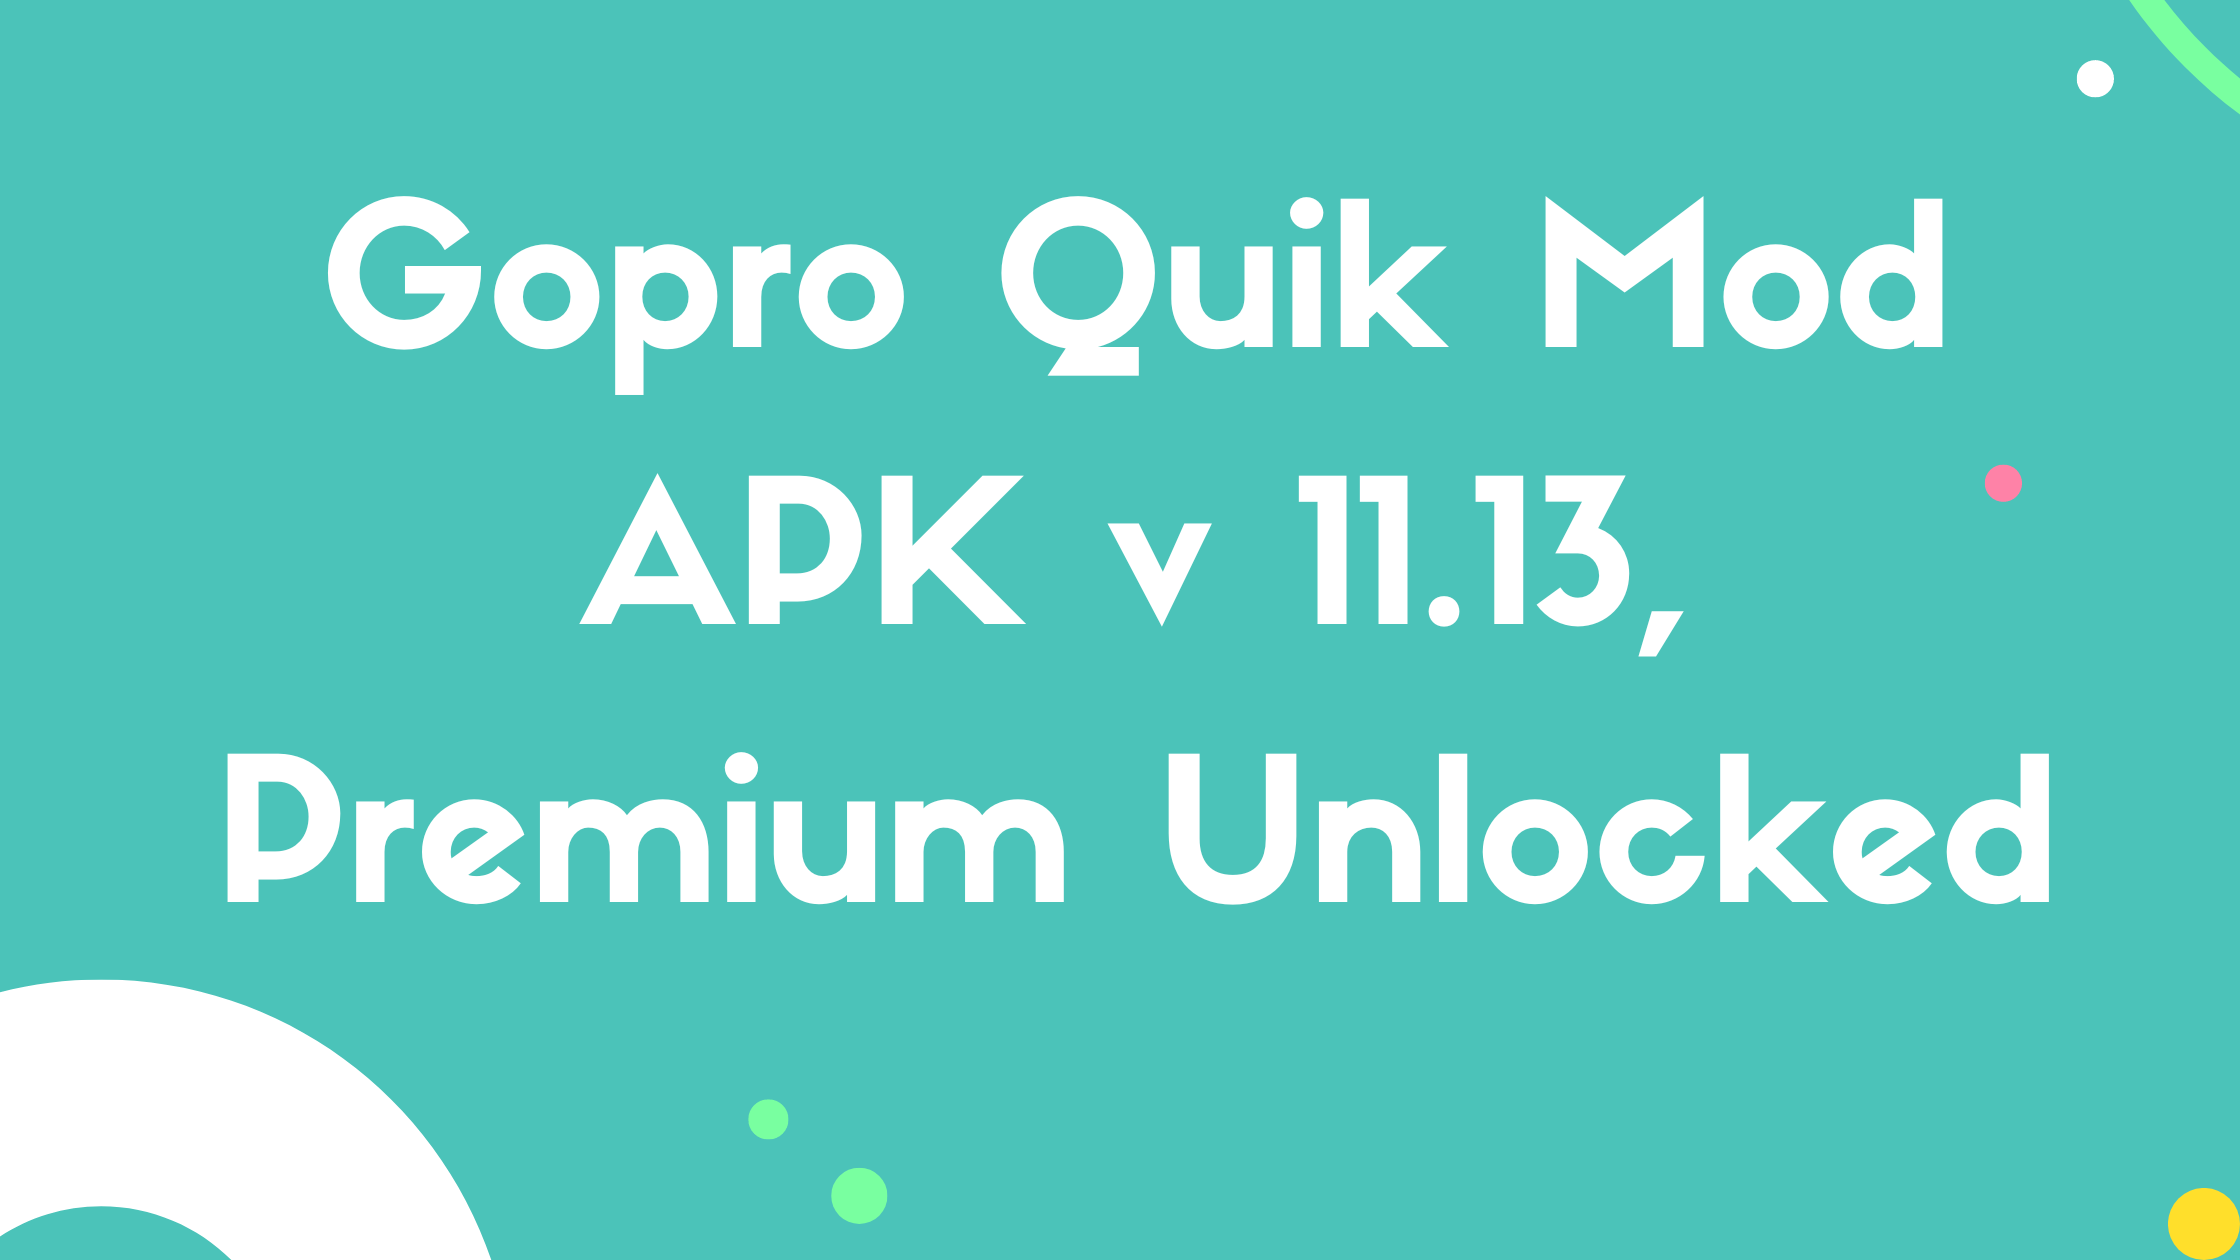 Gopro Quik Mod APK v 11.13, Premium Unlocked